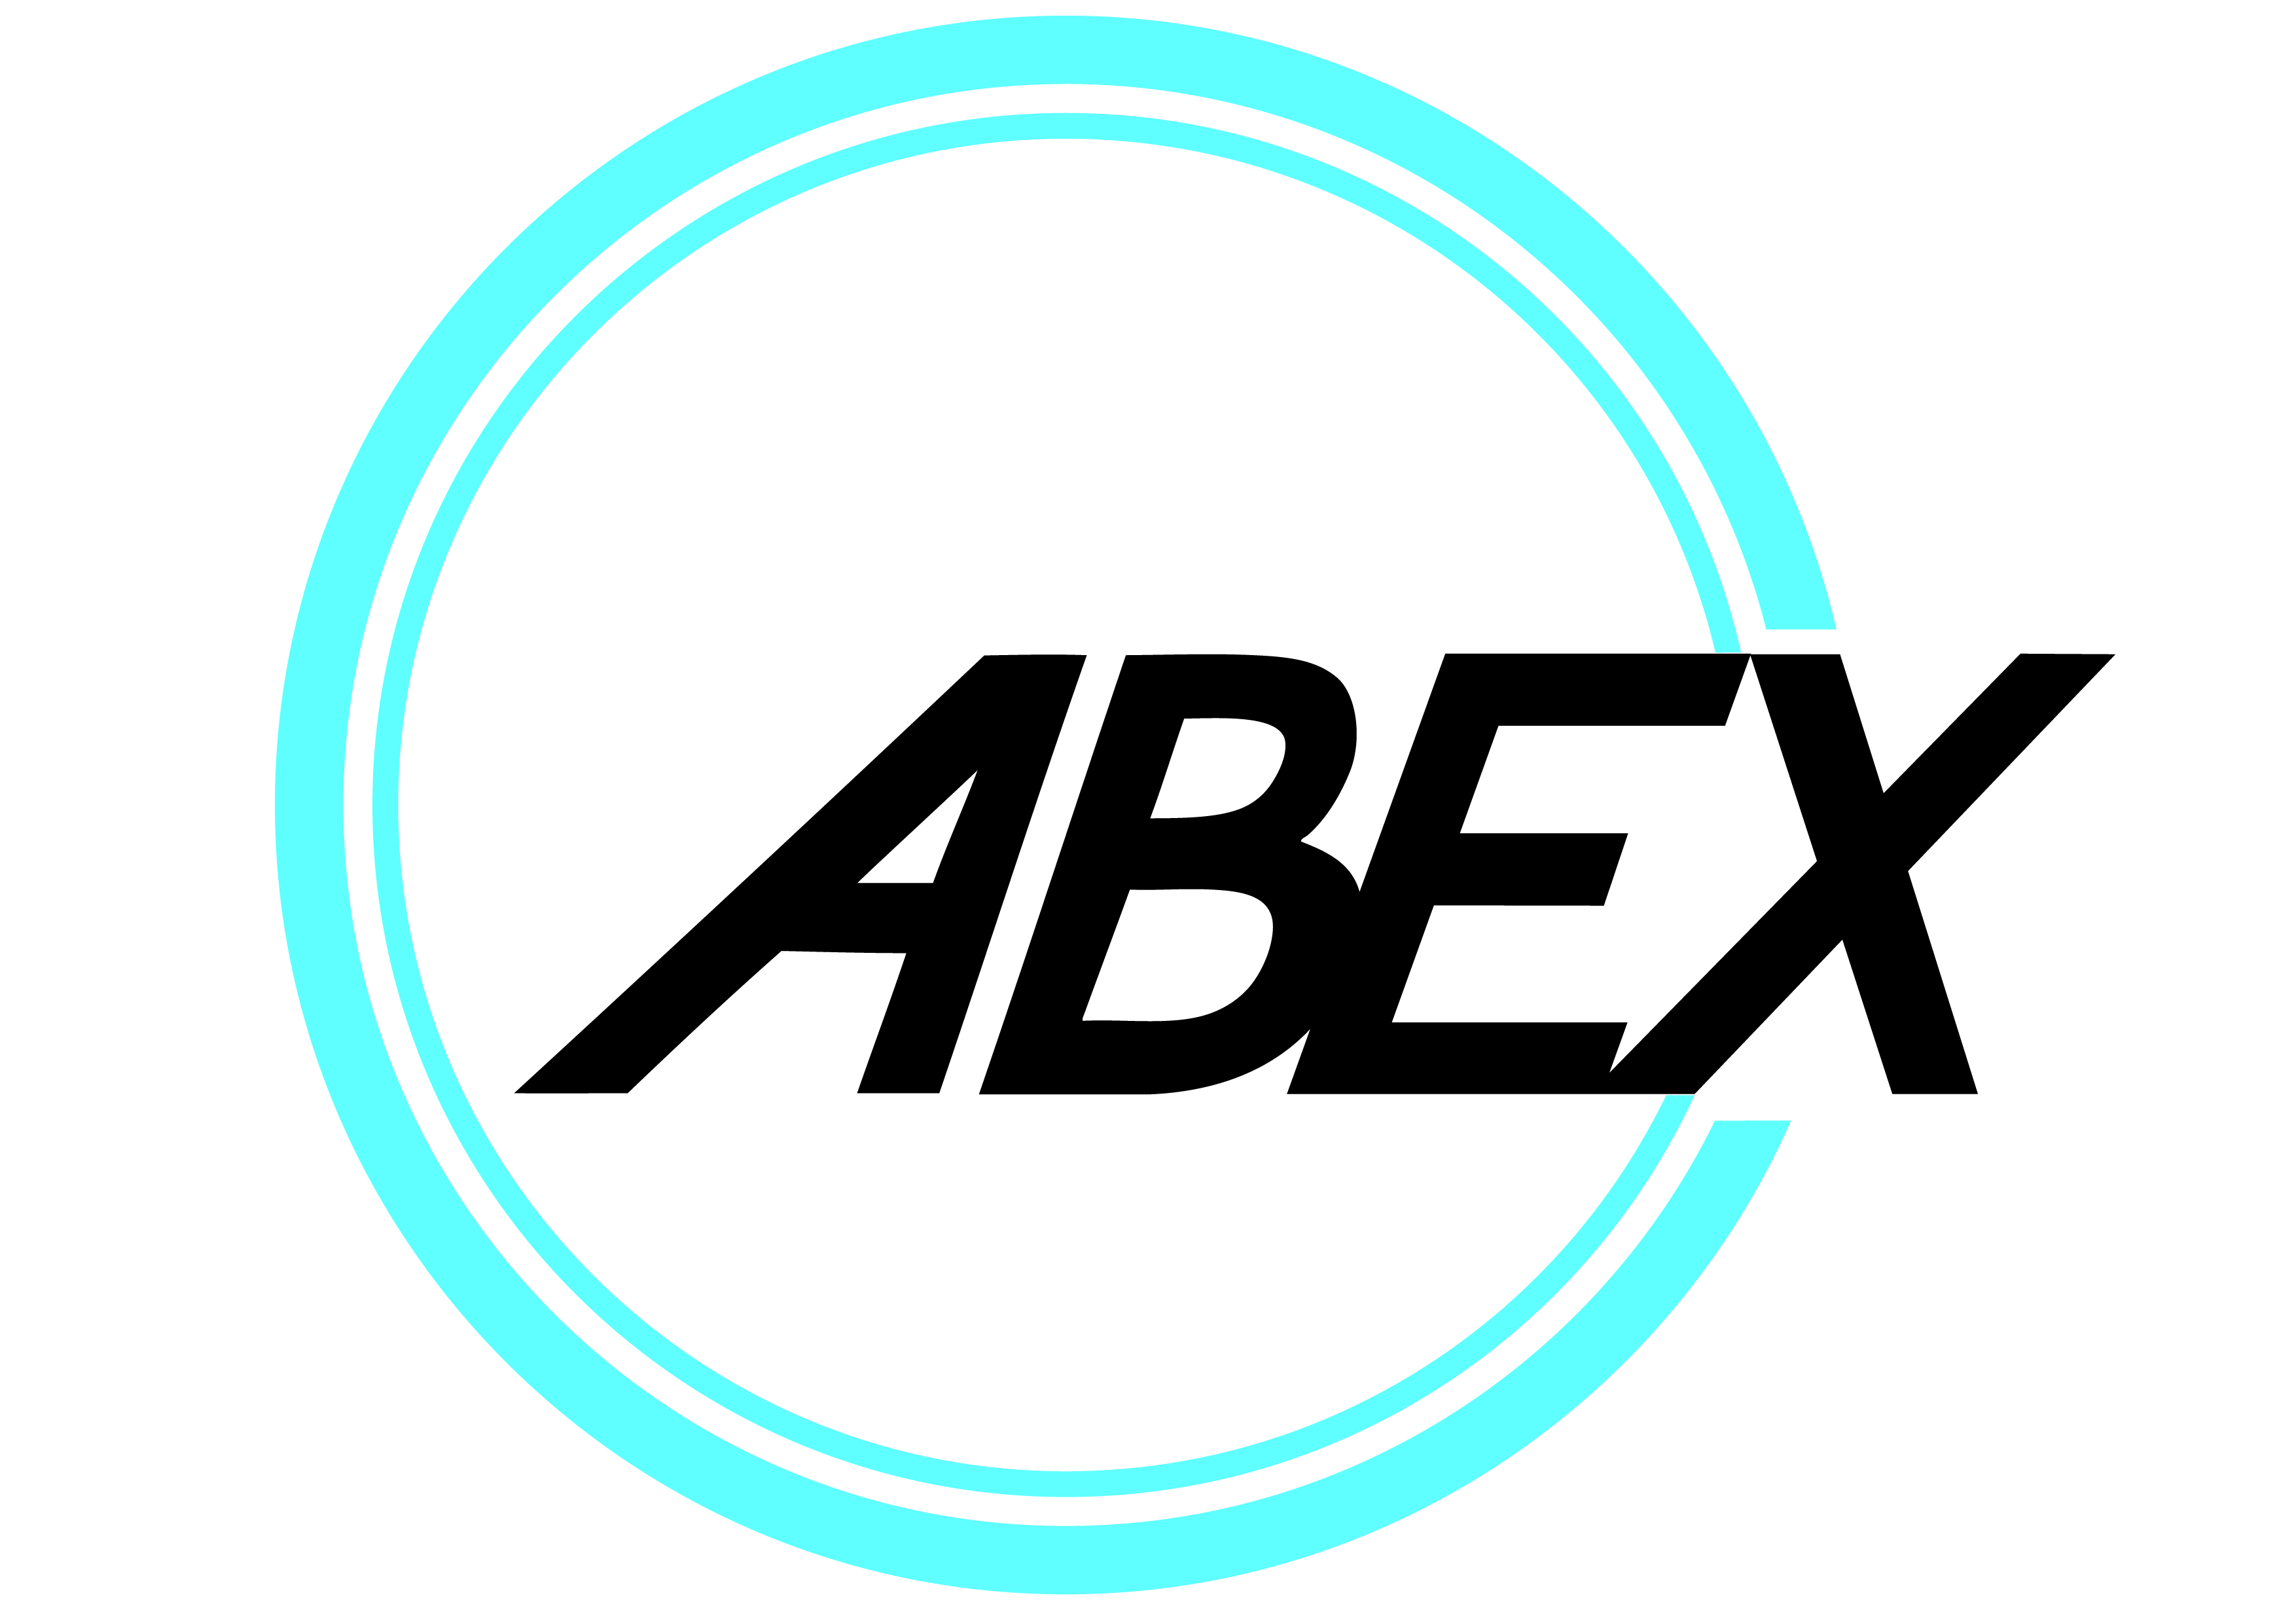 ABEX Medical System Sdn Bhd